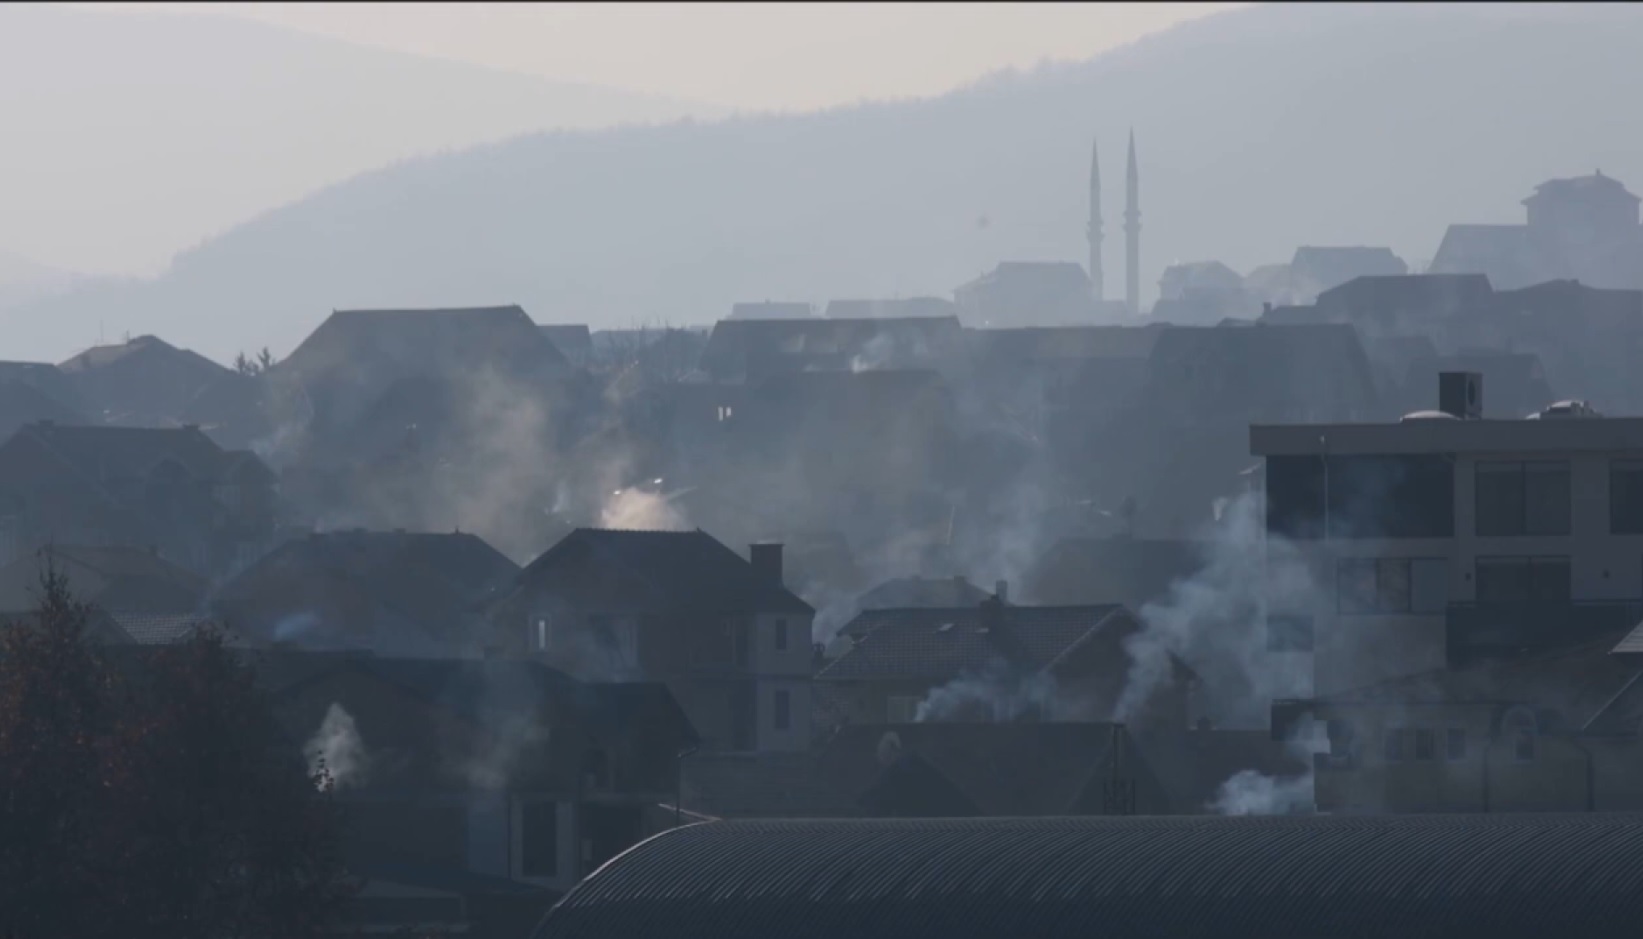 I dalje visok nivo zagađenja u Novom Pazaru: Gde su mere i reakcije nadležnih?